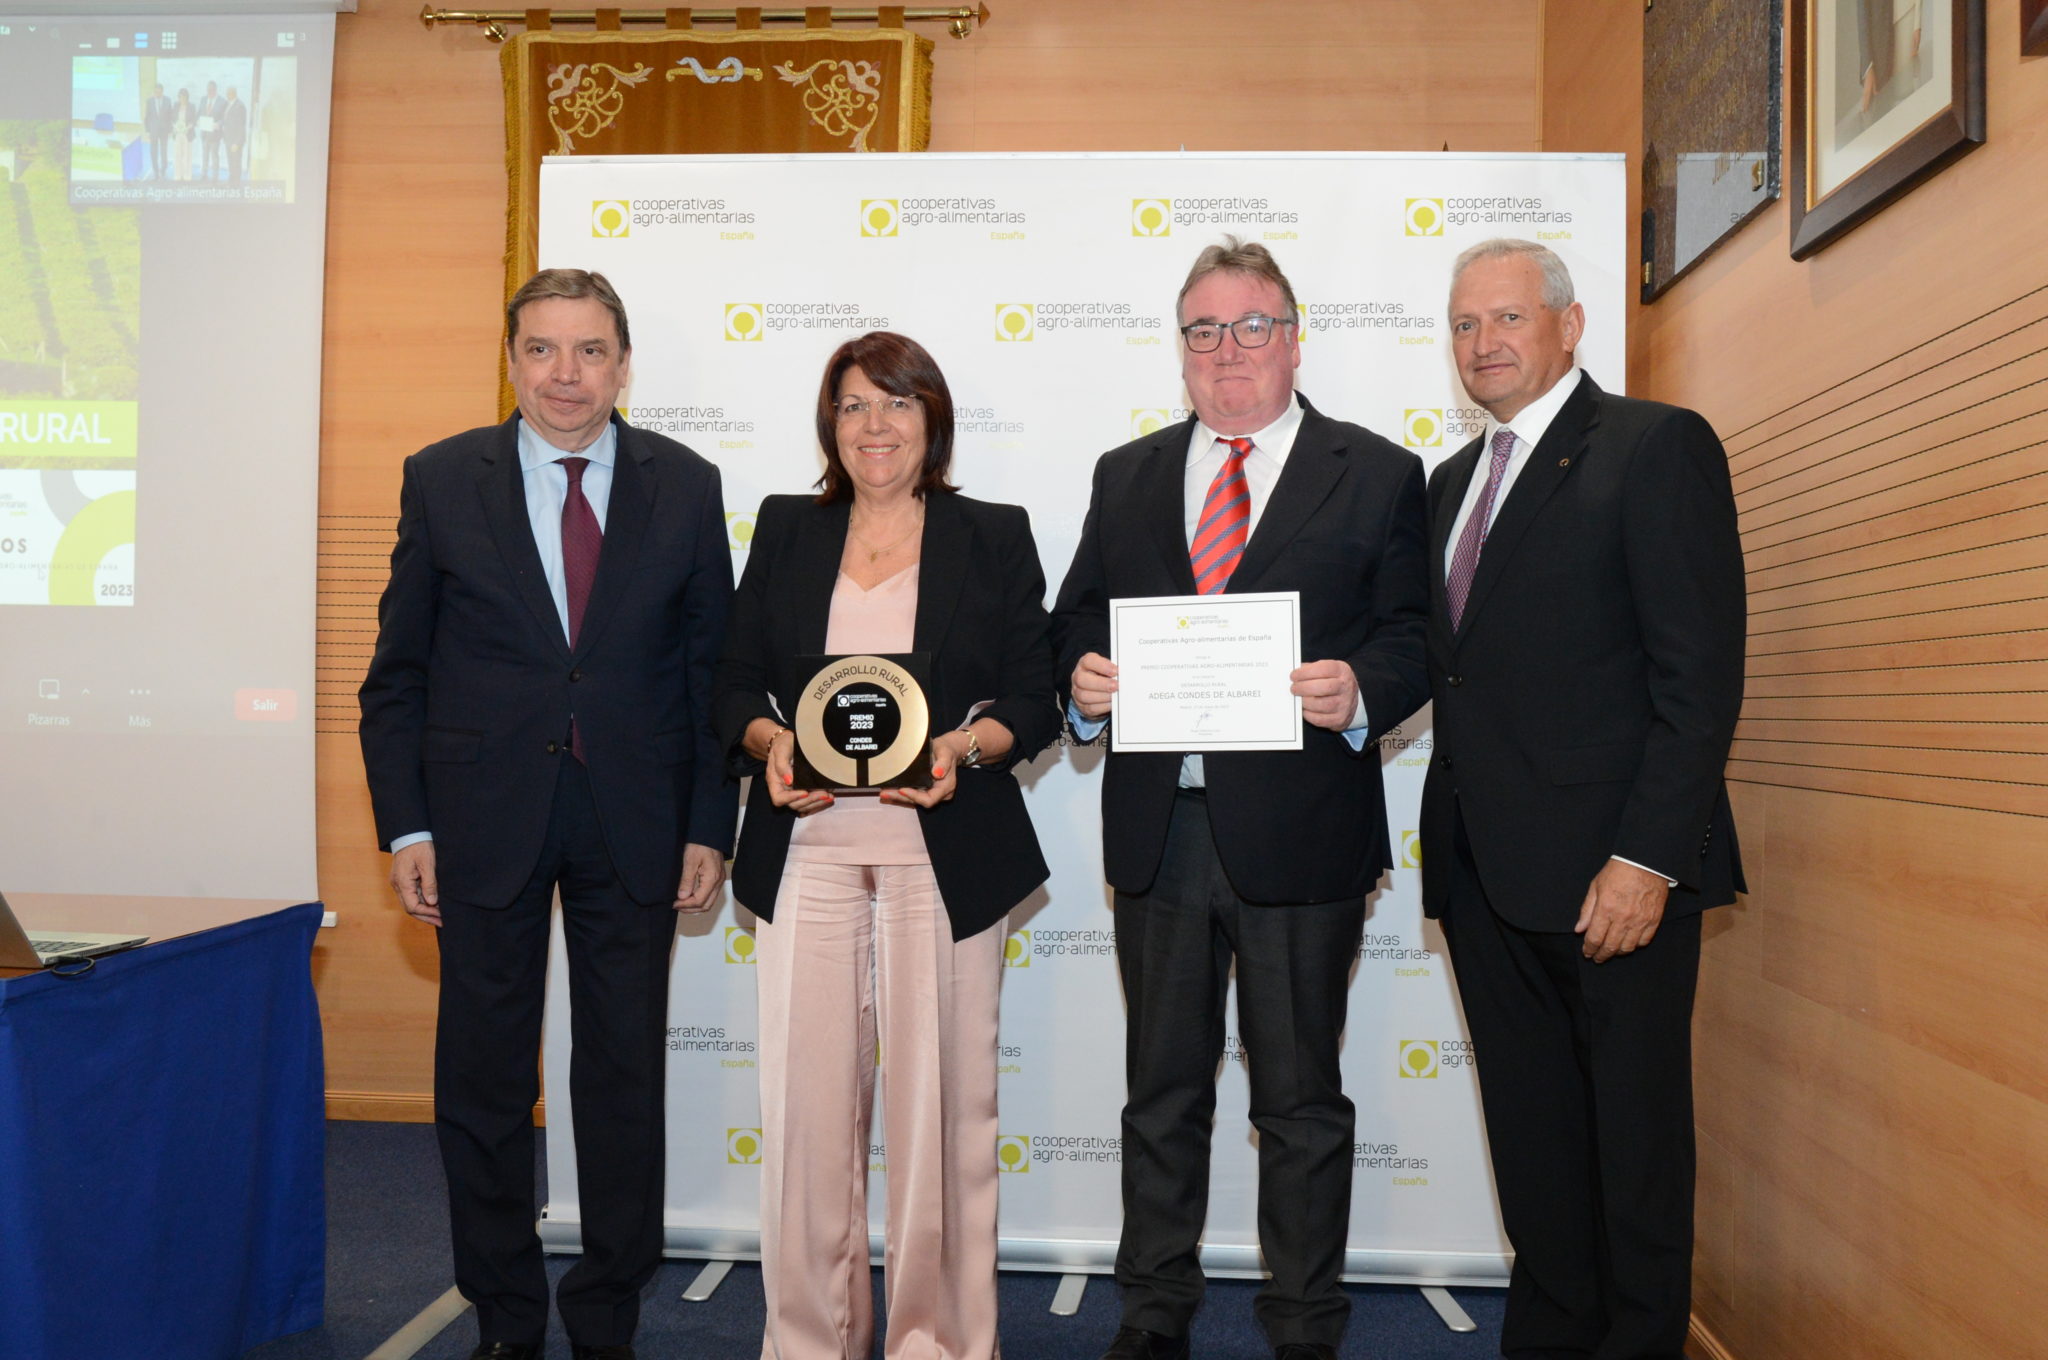 Condes de Albarei ha triunfado en la VIII edición de los Premios Cooperativas Agro-alimentarias de España, siendo galardonada con el Premio al “Desarrollo Rural”. 